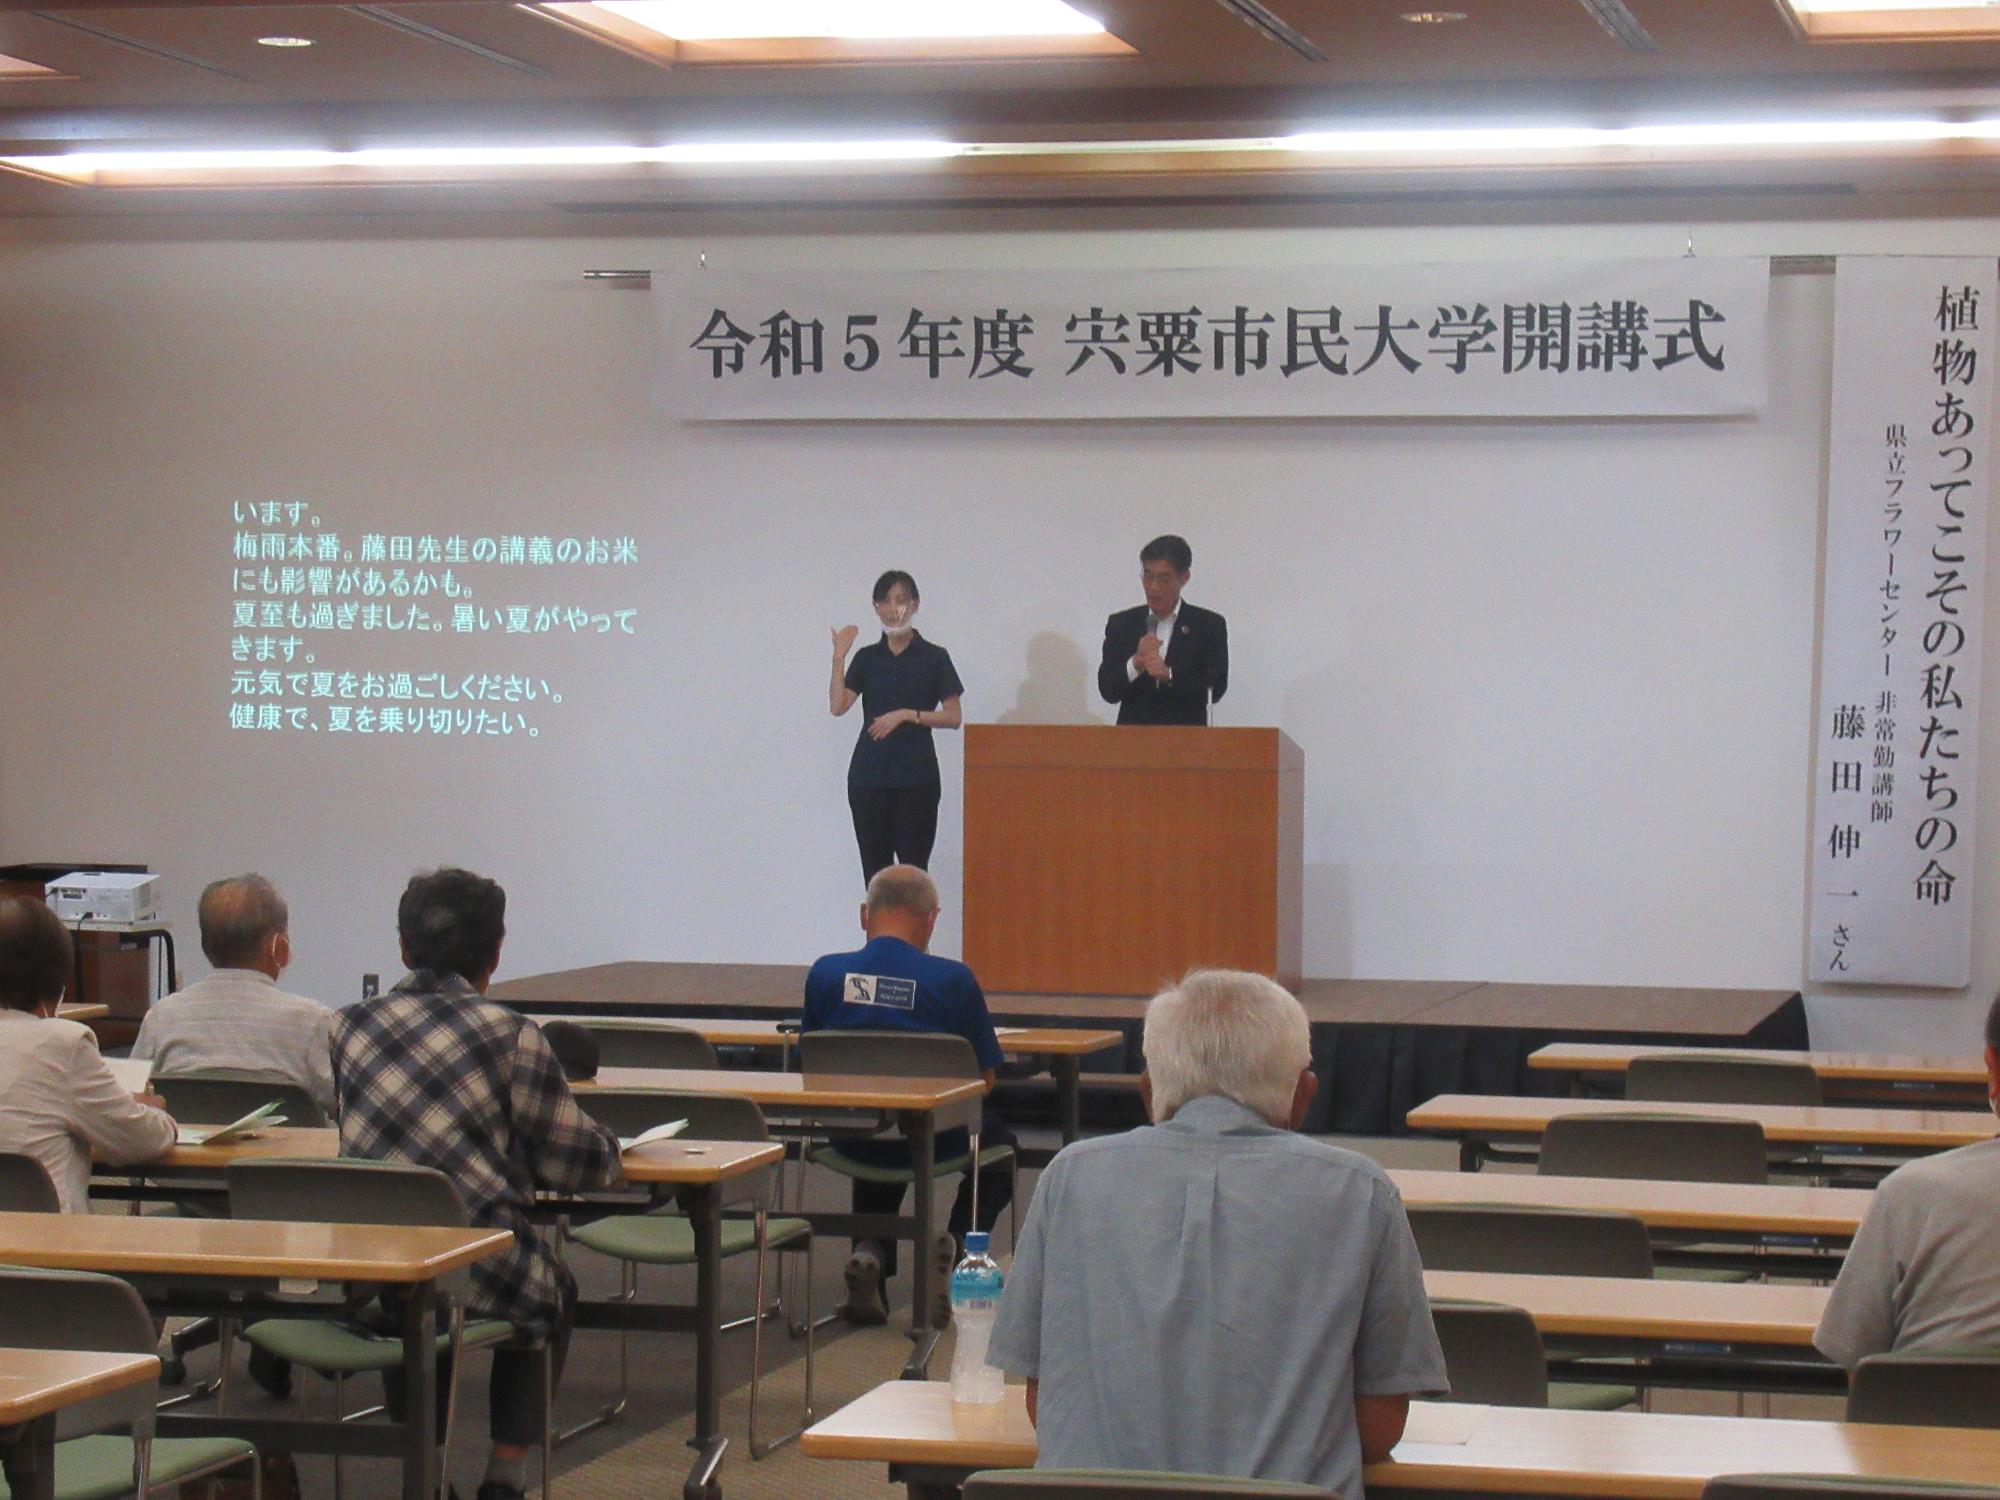 講演会の会場で市民大学の参加者が中田教育長の挨拶を聞いている写真